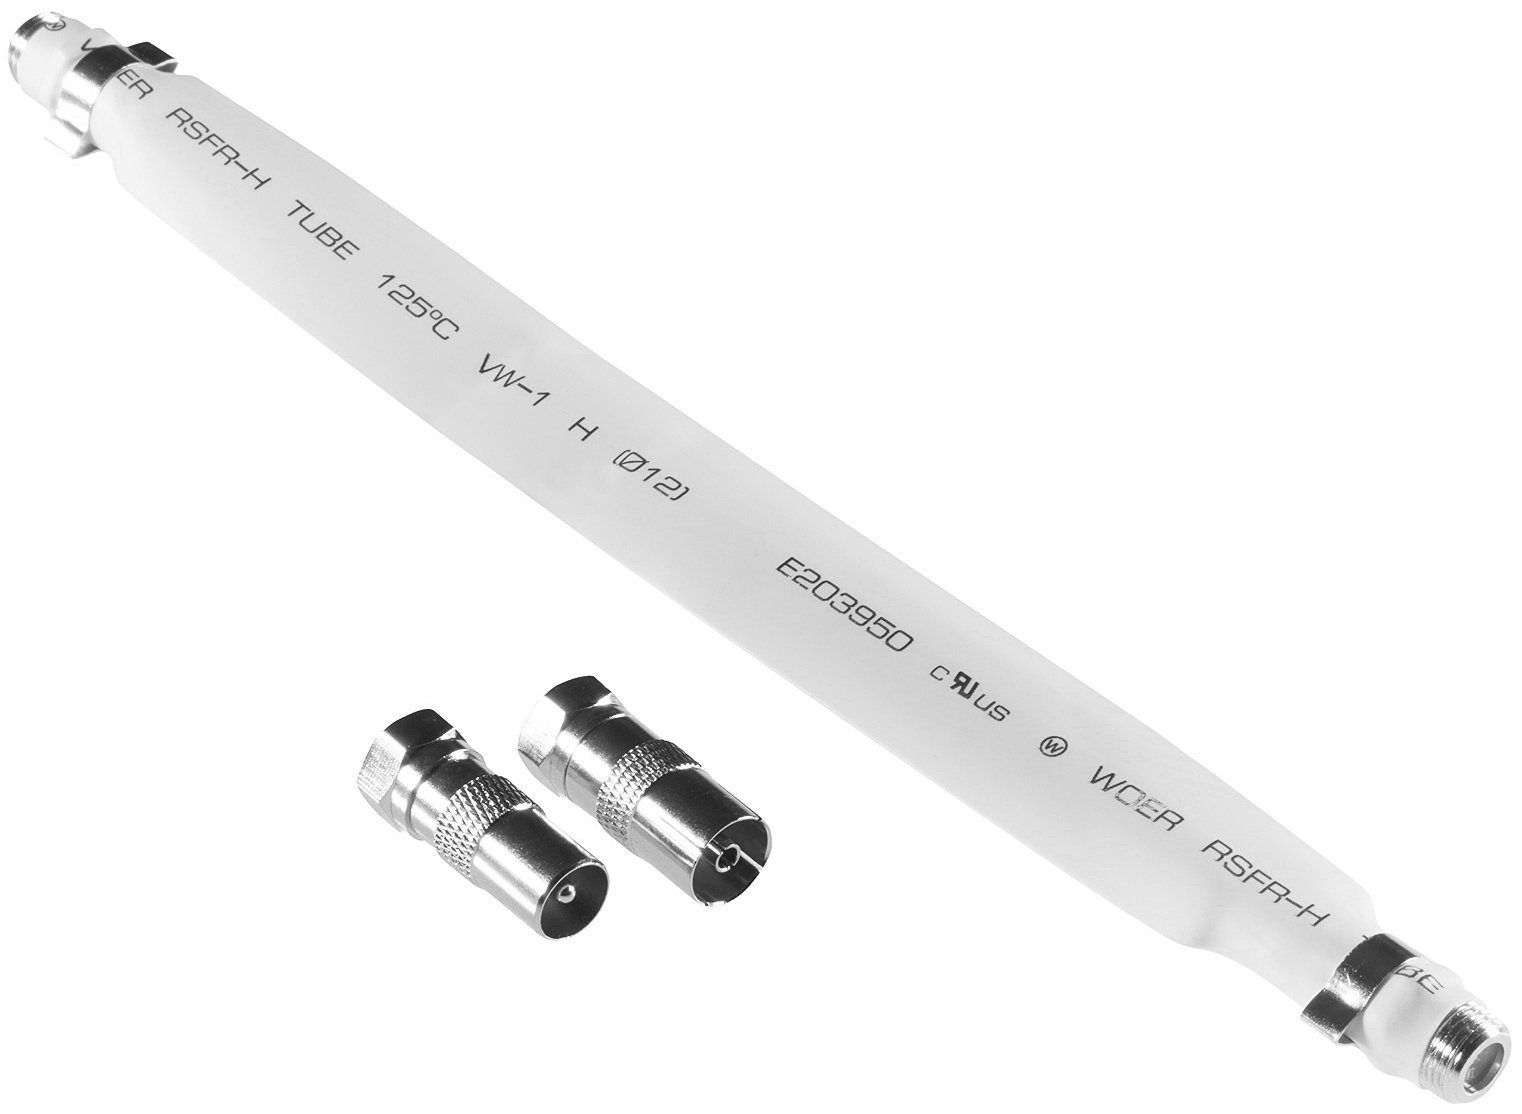 Poppstar SAT Fensterdurchführung SAT Kabel flach SAT-Kabel, (21.5 cm), 21,5cm Durchführung 2mm ultra-flach, Kupplungen 2x F-Stecker, weiß